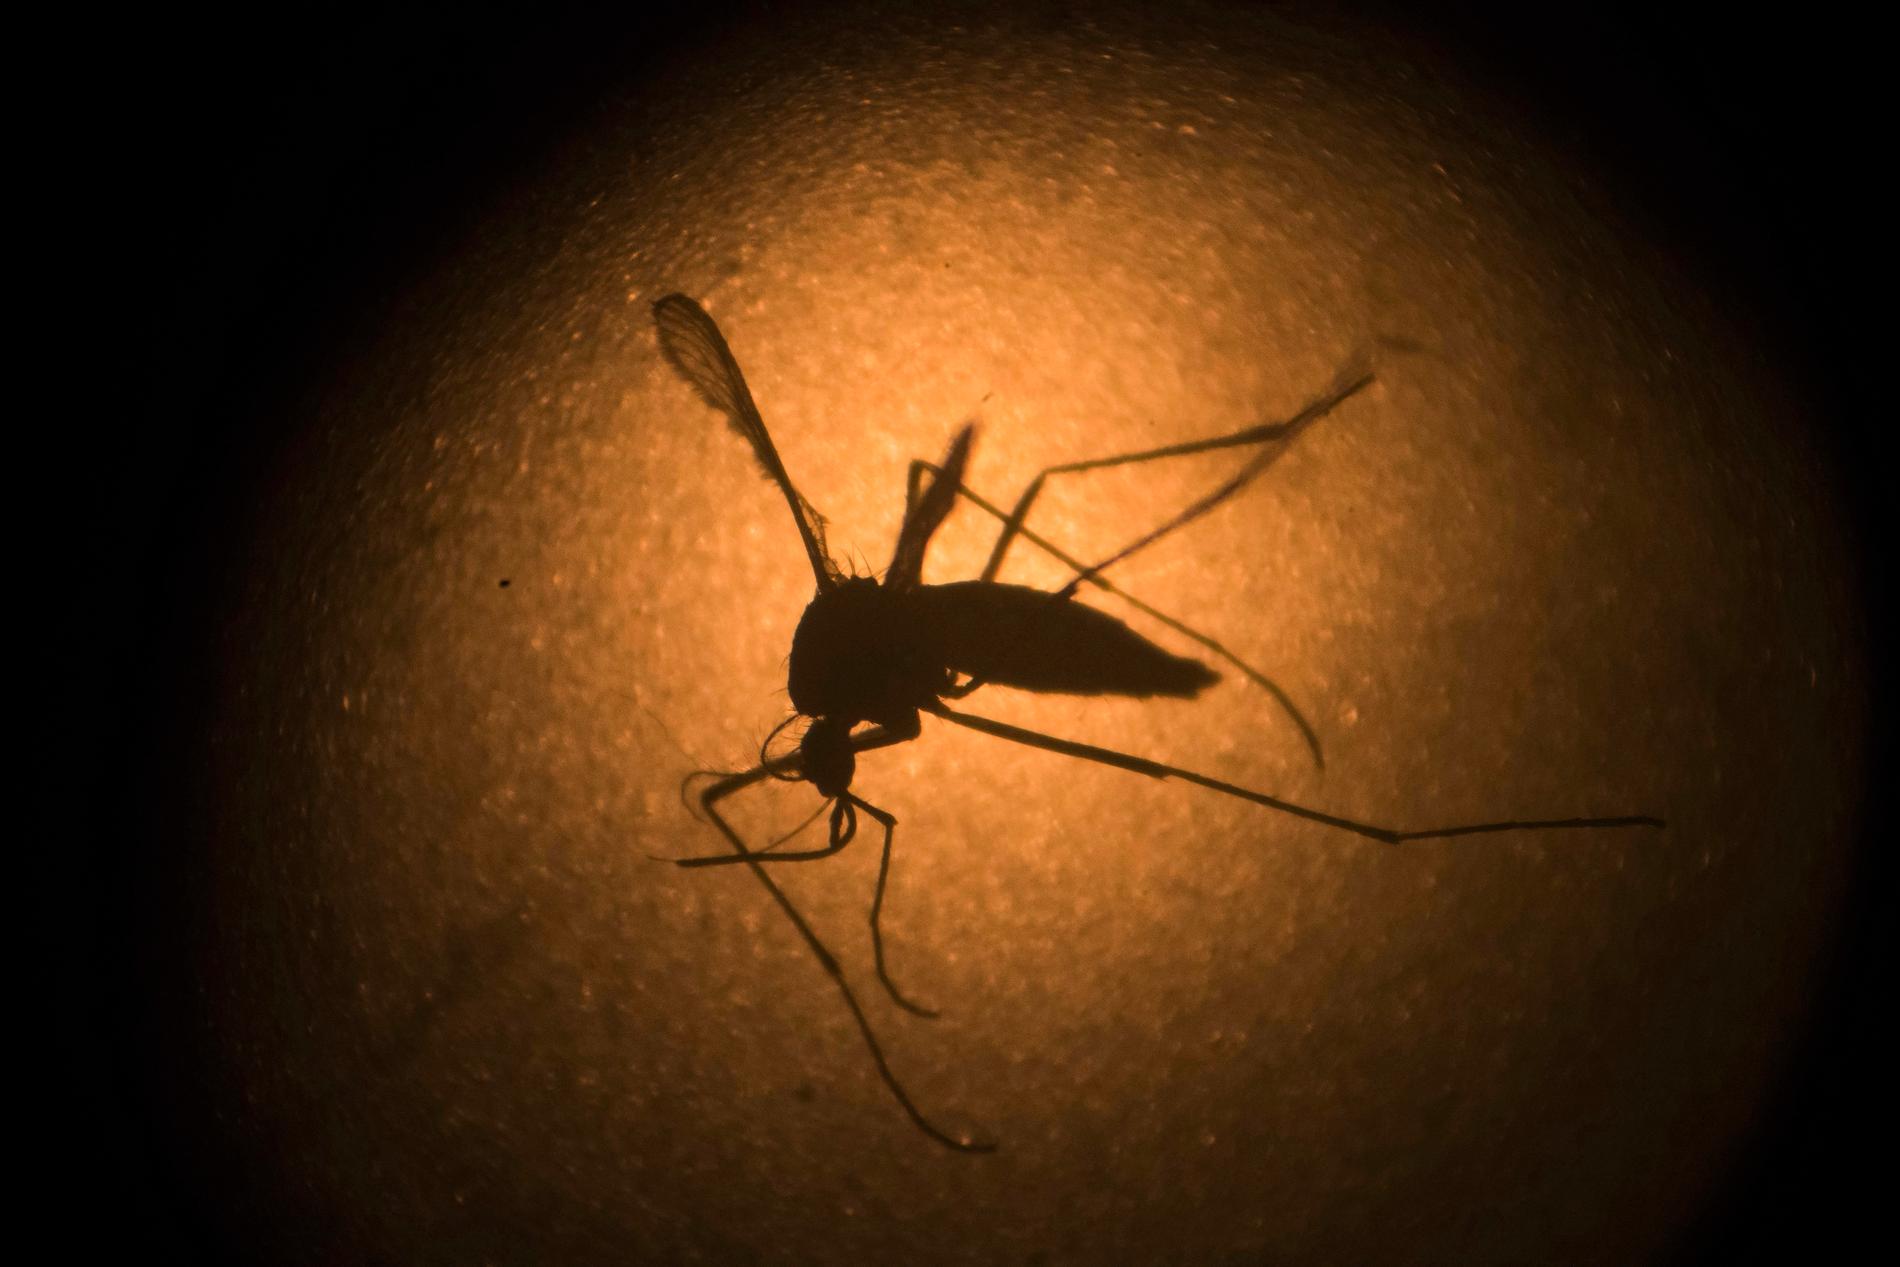 Den smittspridande Aedes aegyptis blodtörst kan kanske kontrolleras med medicin tänkt att minska människors aptit. Arkivbild.